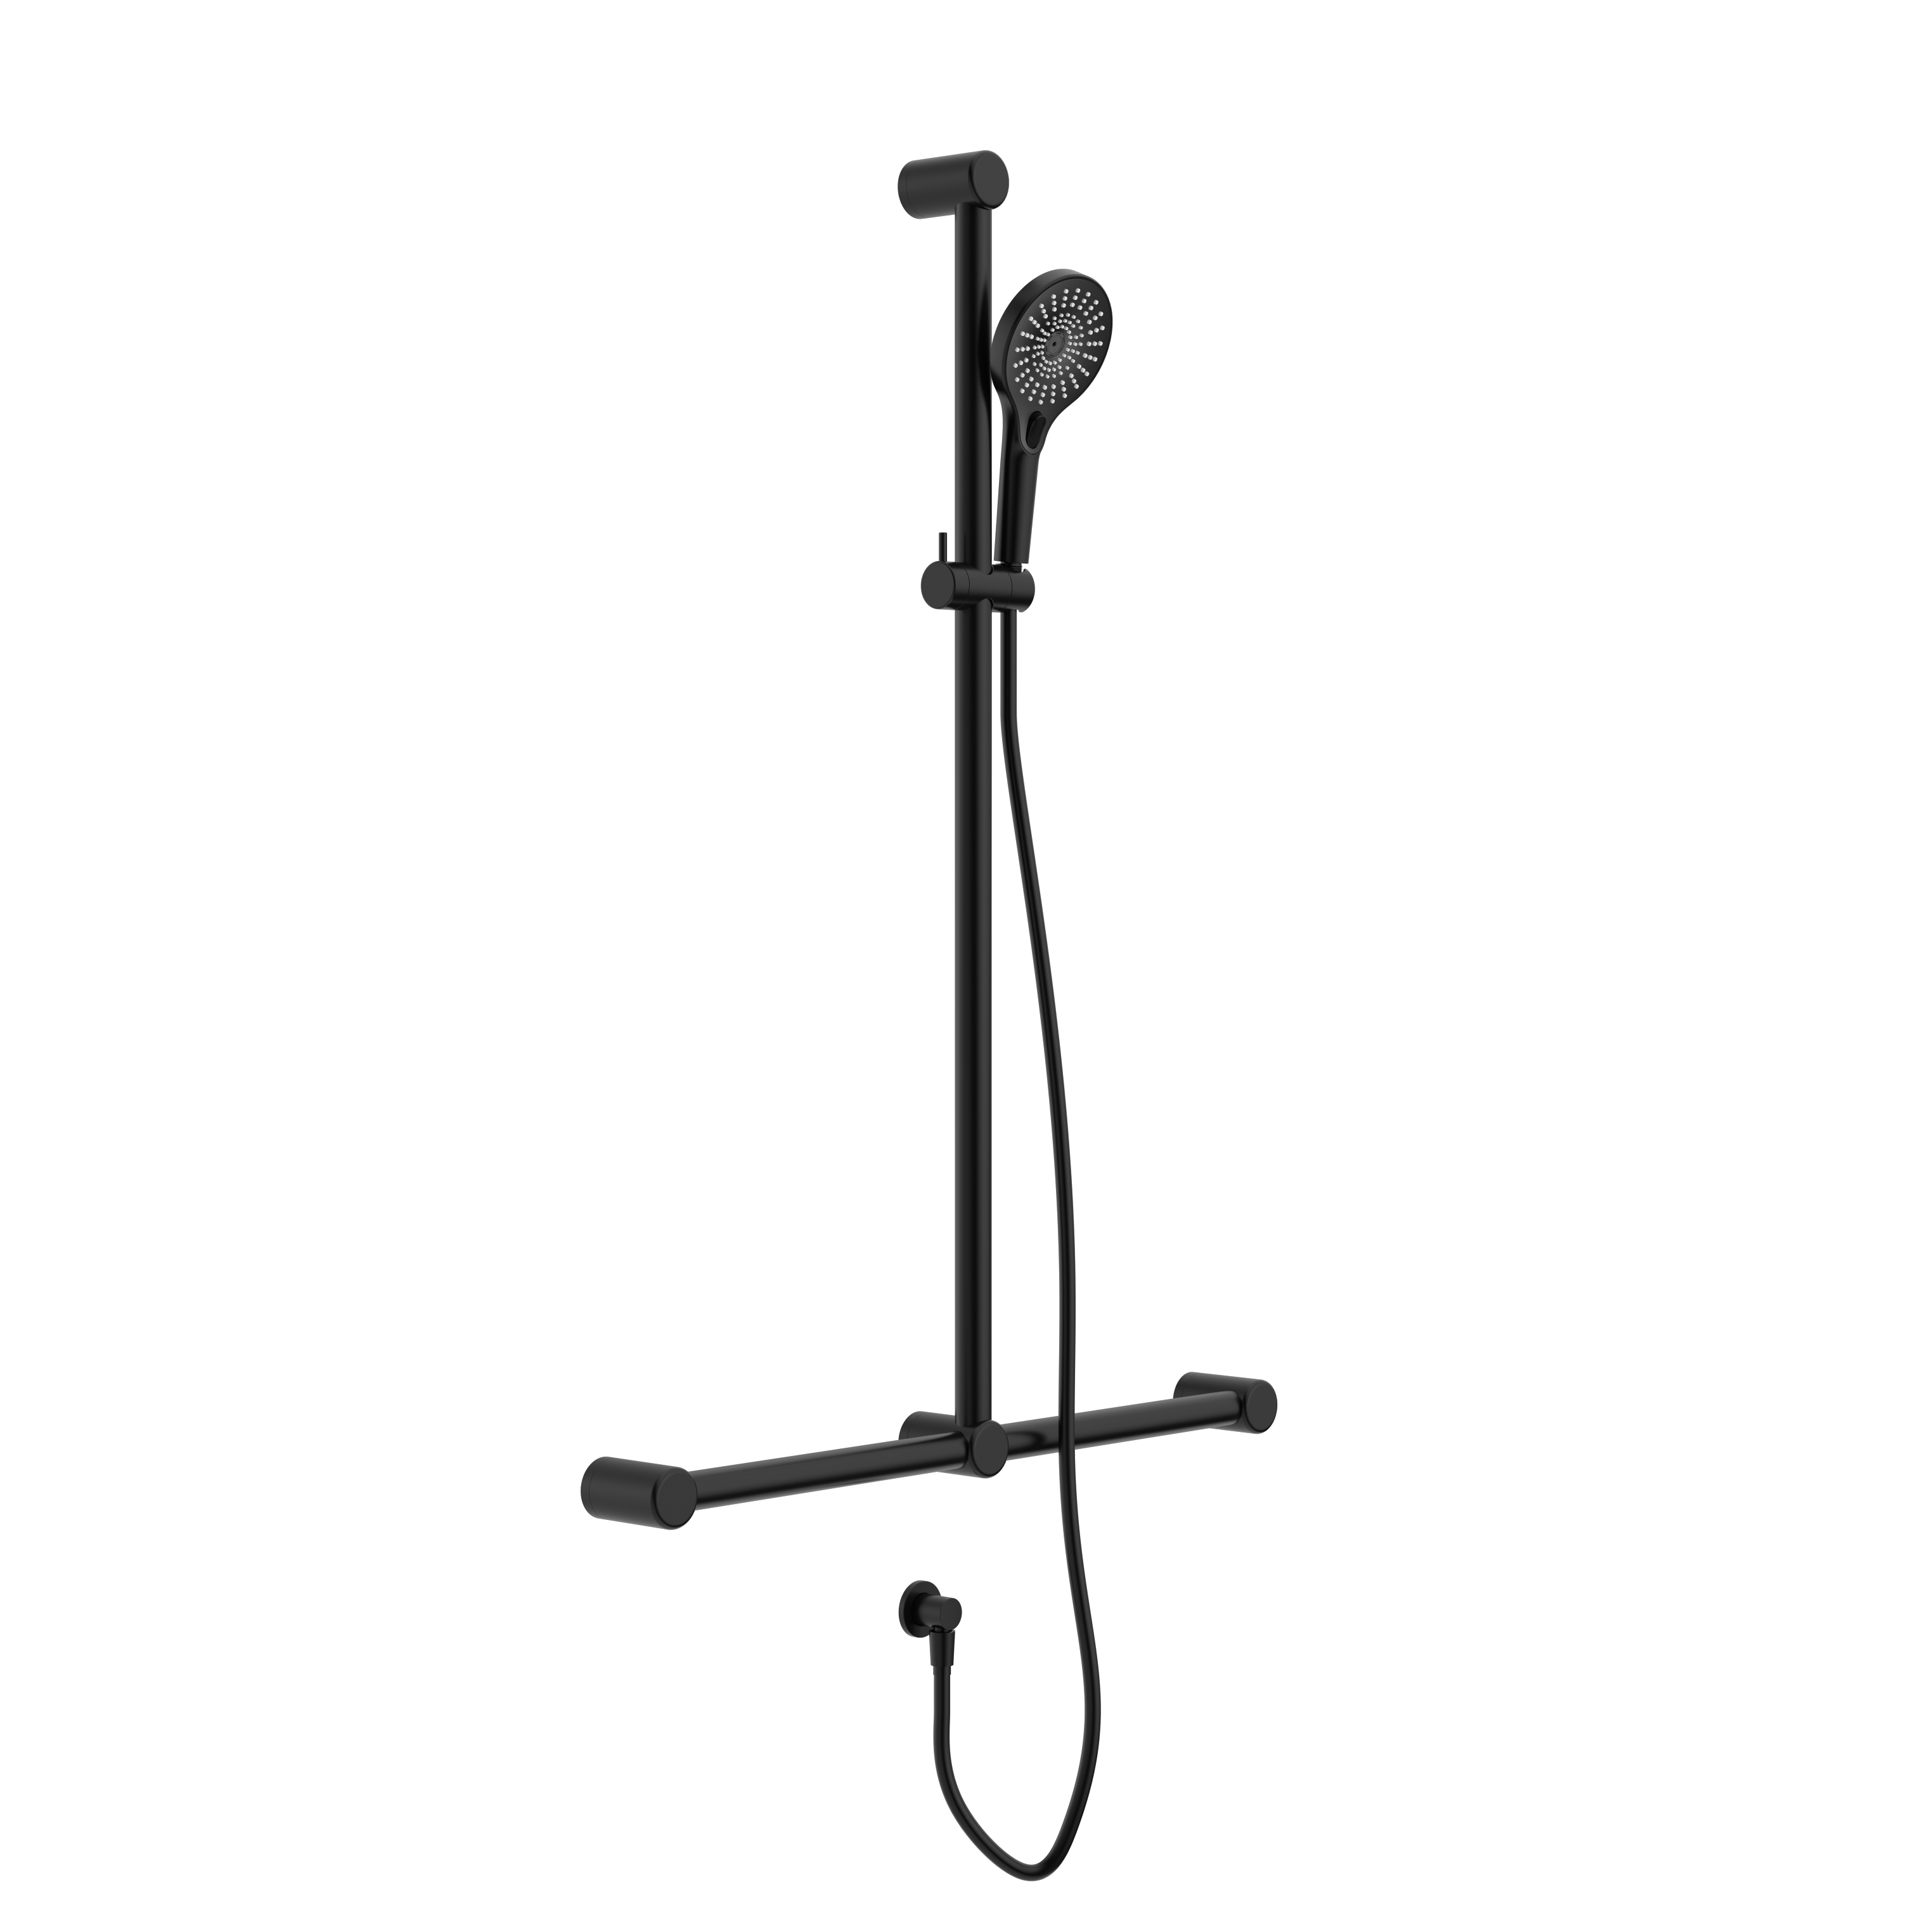 Calibre Mecca 32mm T Bar Grab Rail And Adjustable Shower Set 1100x750mm Matte Black - NRCS006MB